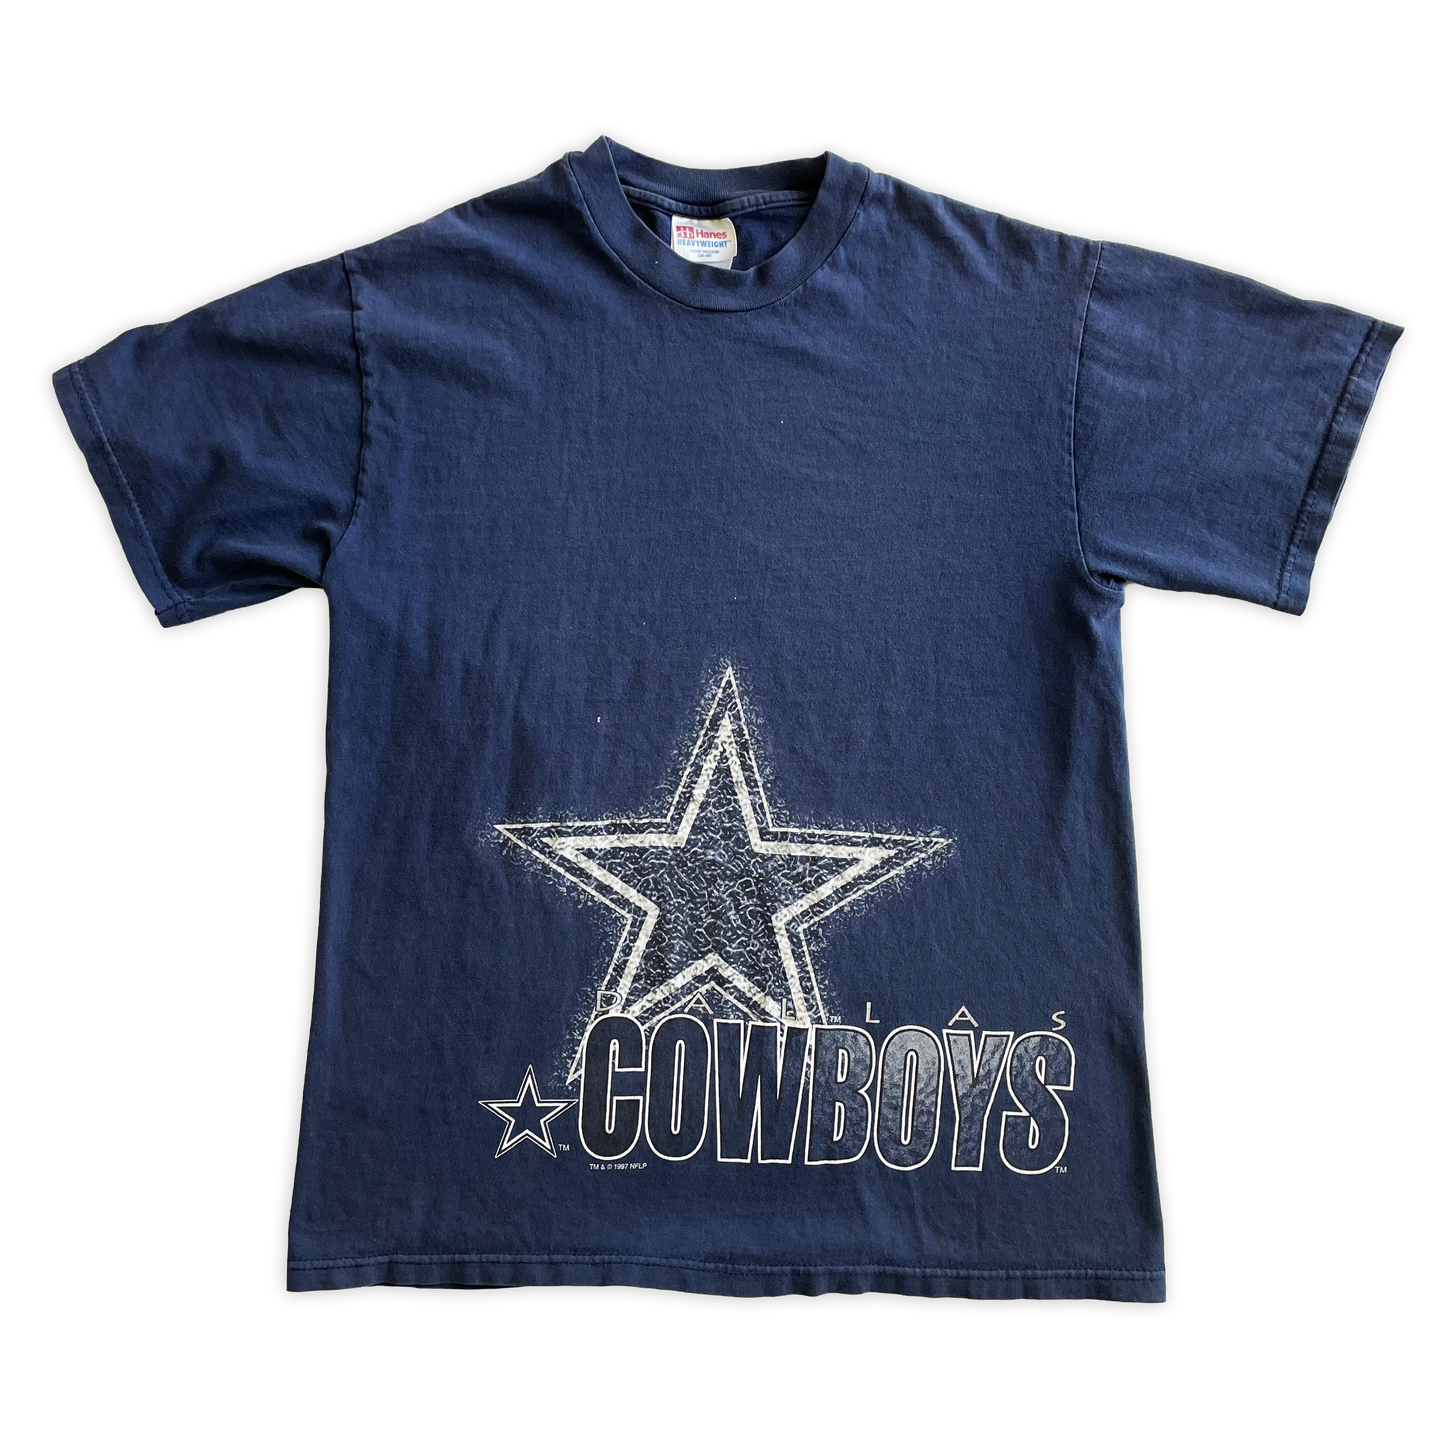 90s Dallas Cowboys Tee - Sz S